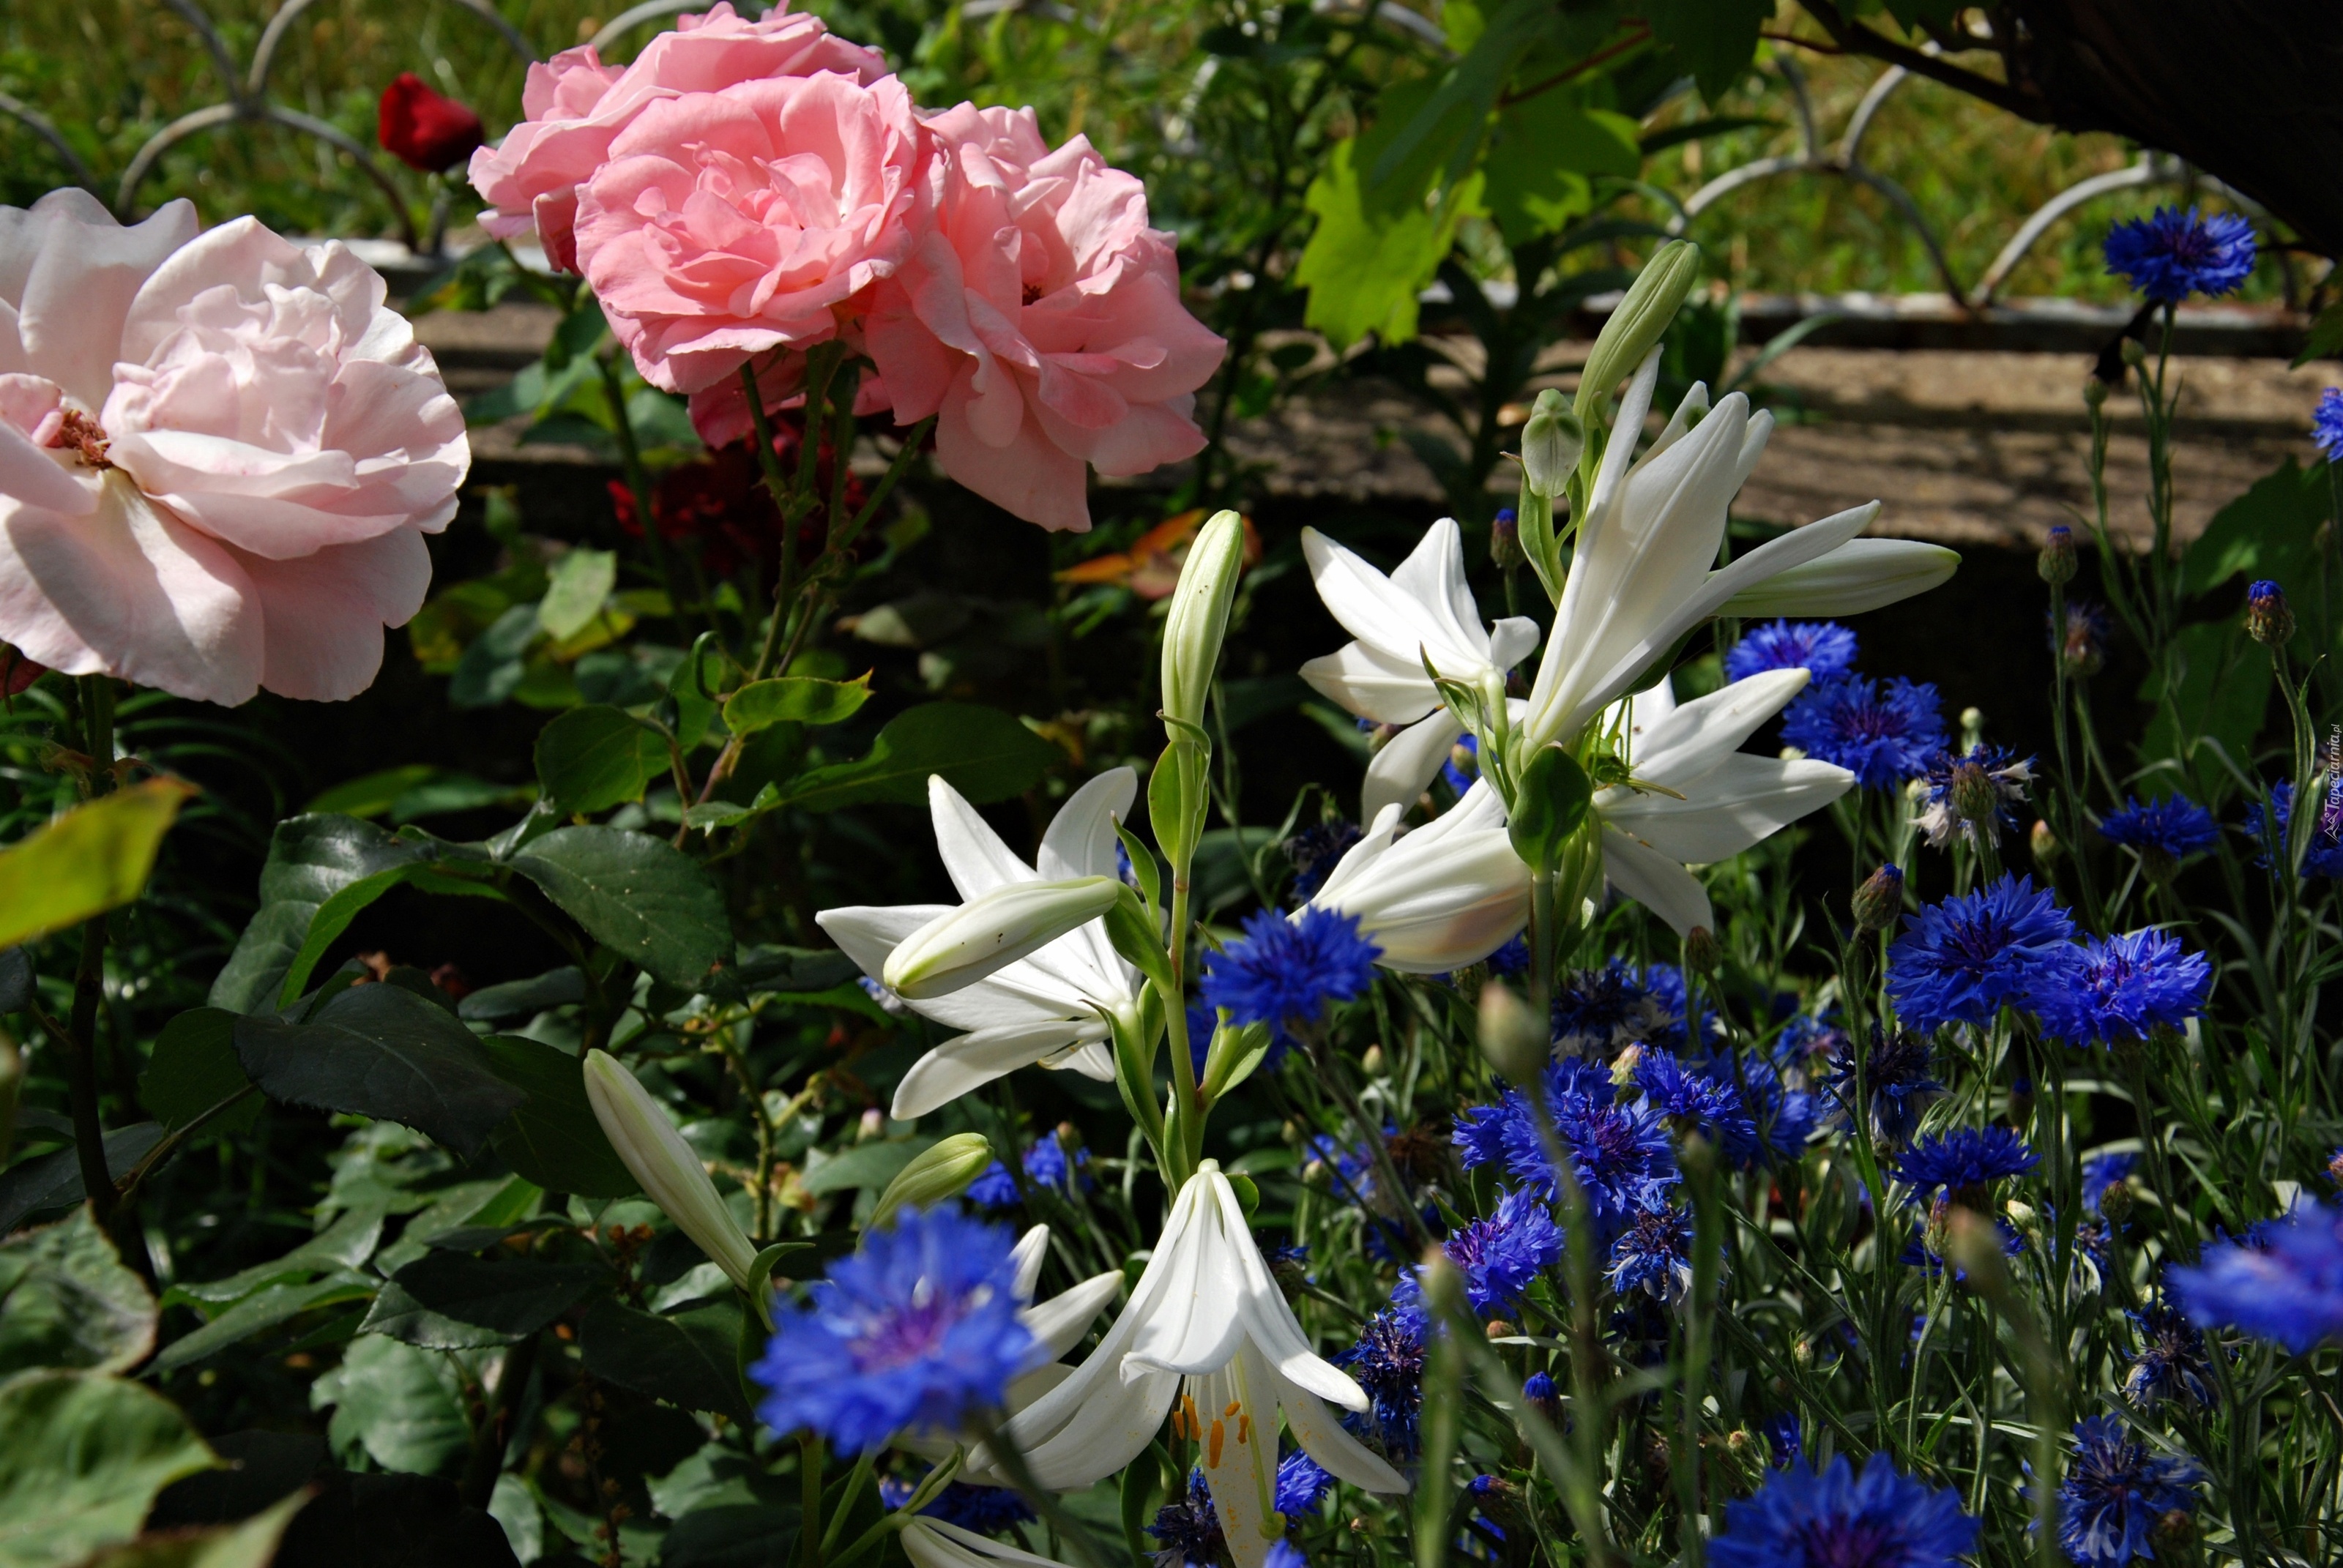 Ogródek, Róże, Lilie, Bławatki